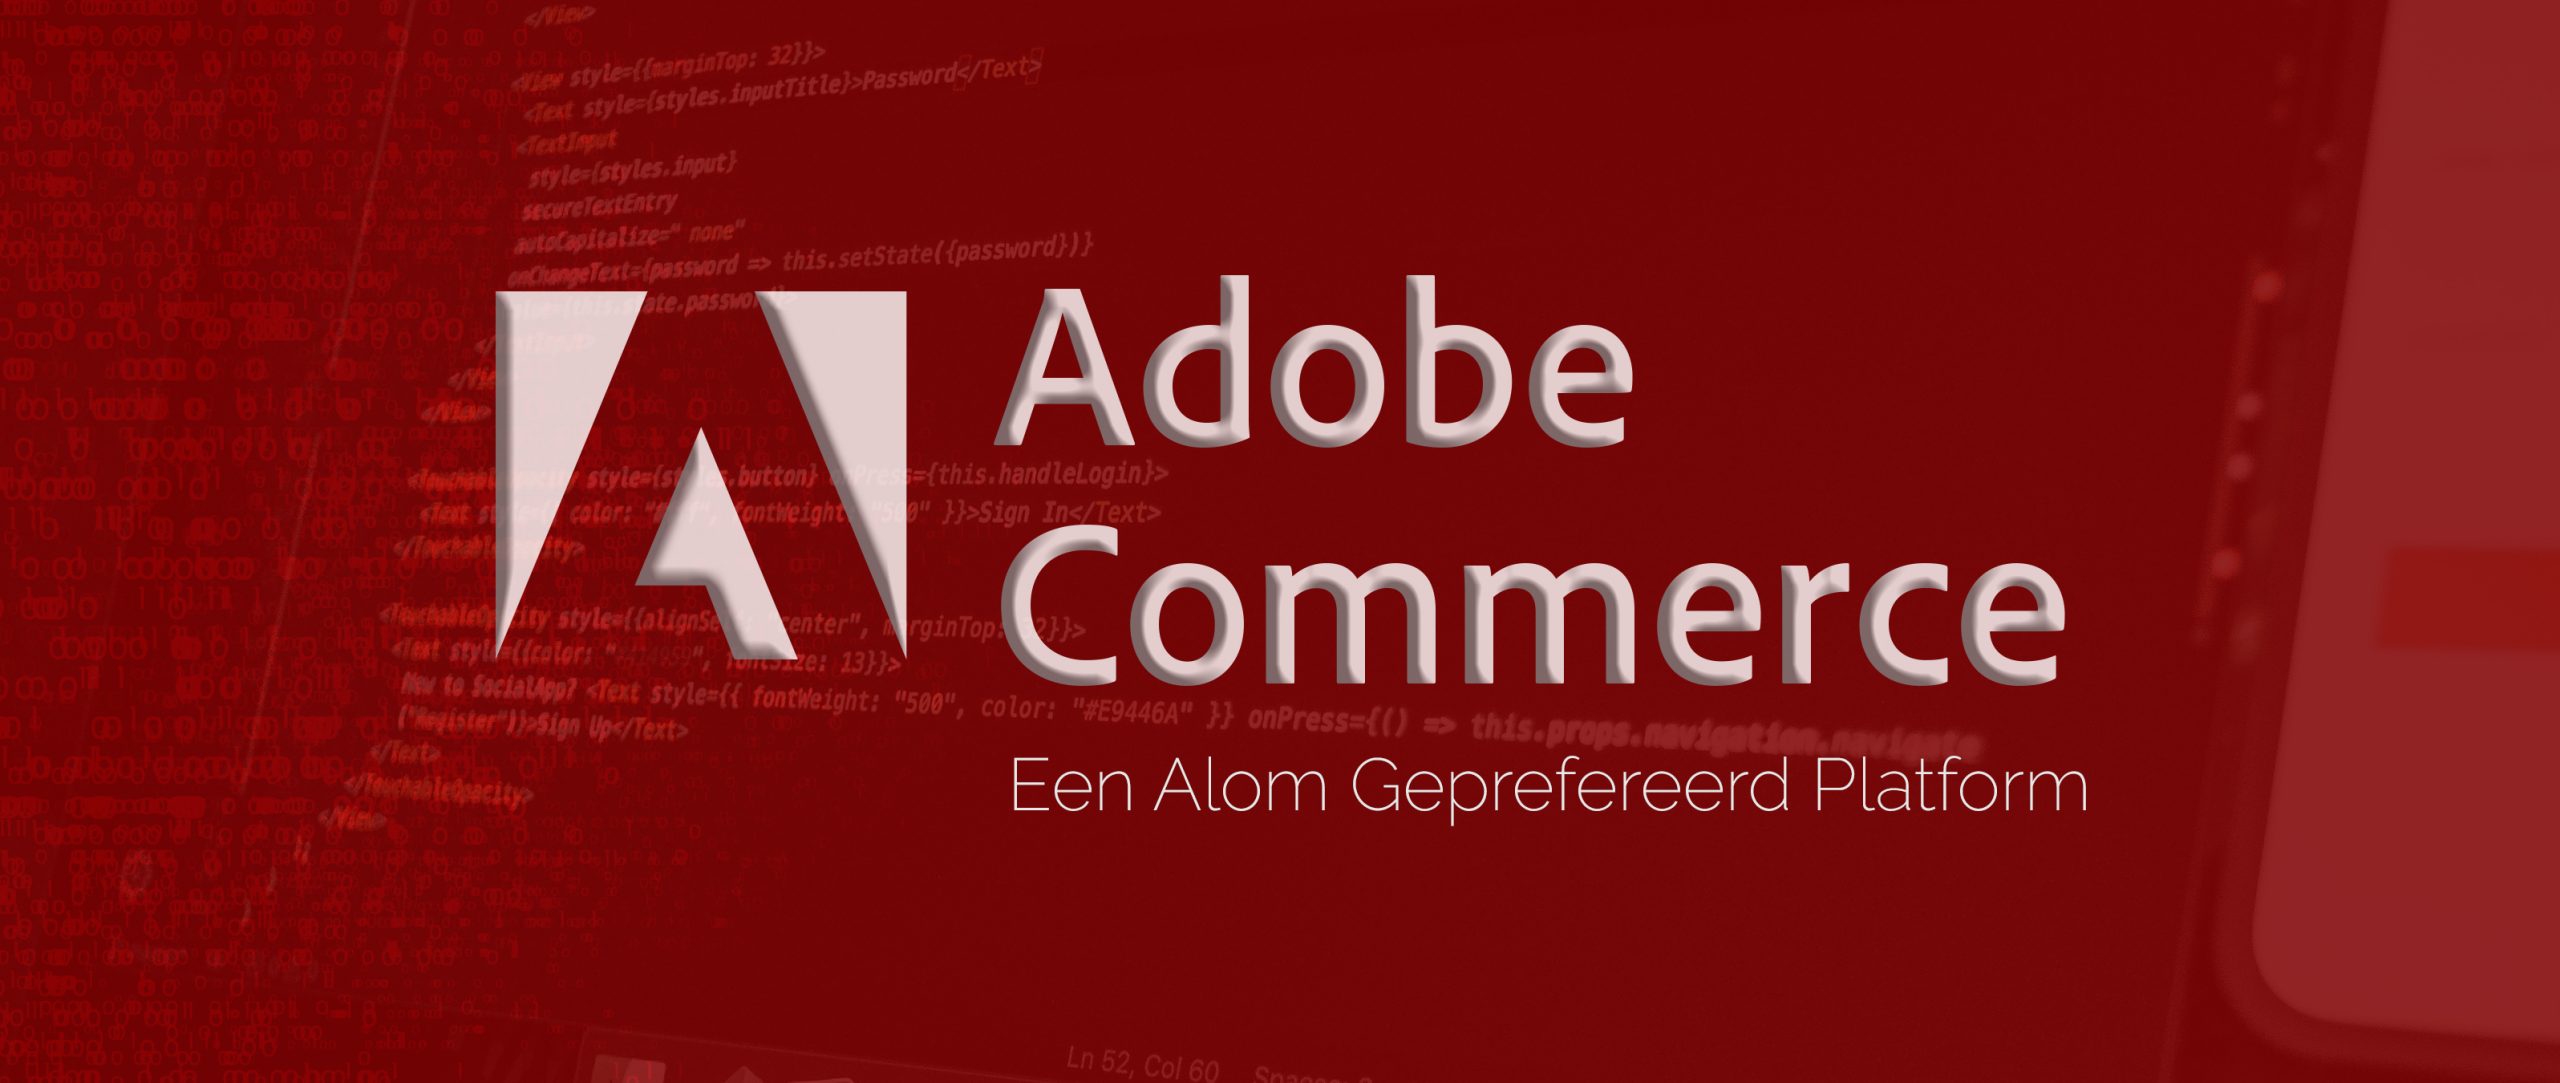 Wat maakt Adobe Commerce tot een alom geprefereerd platform?